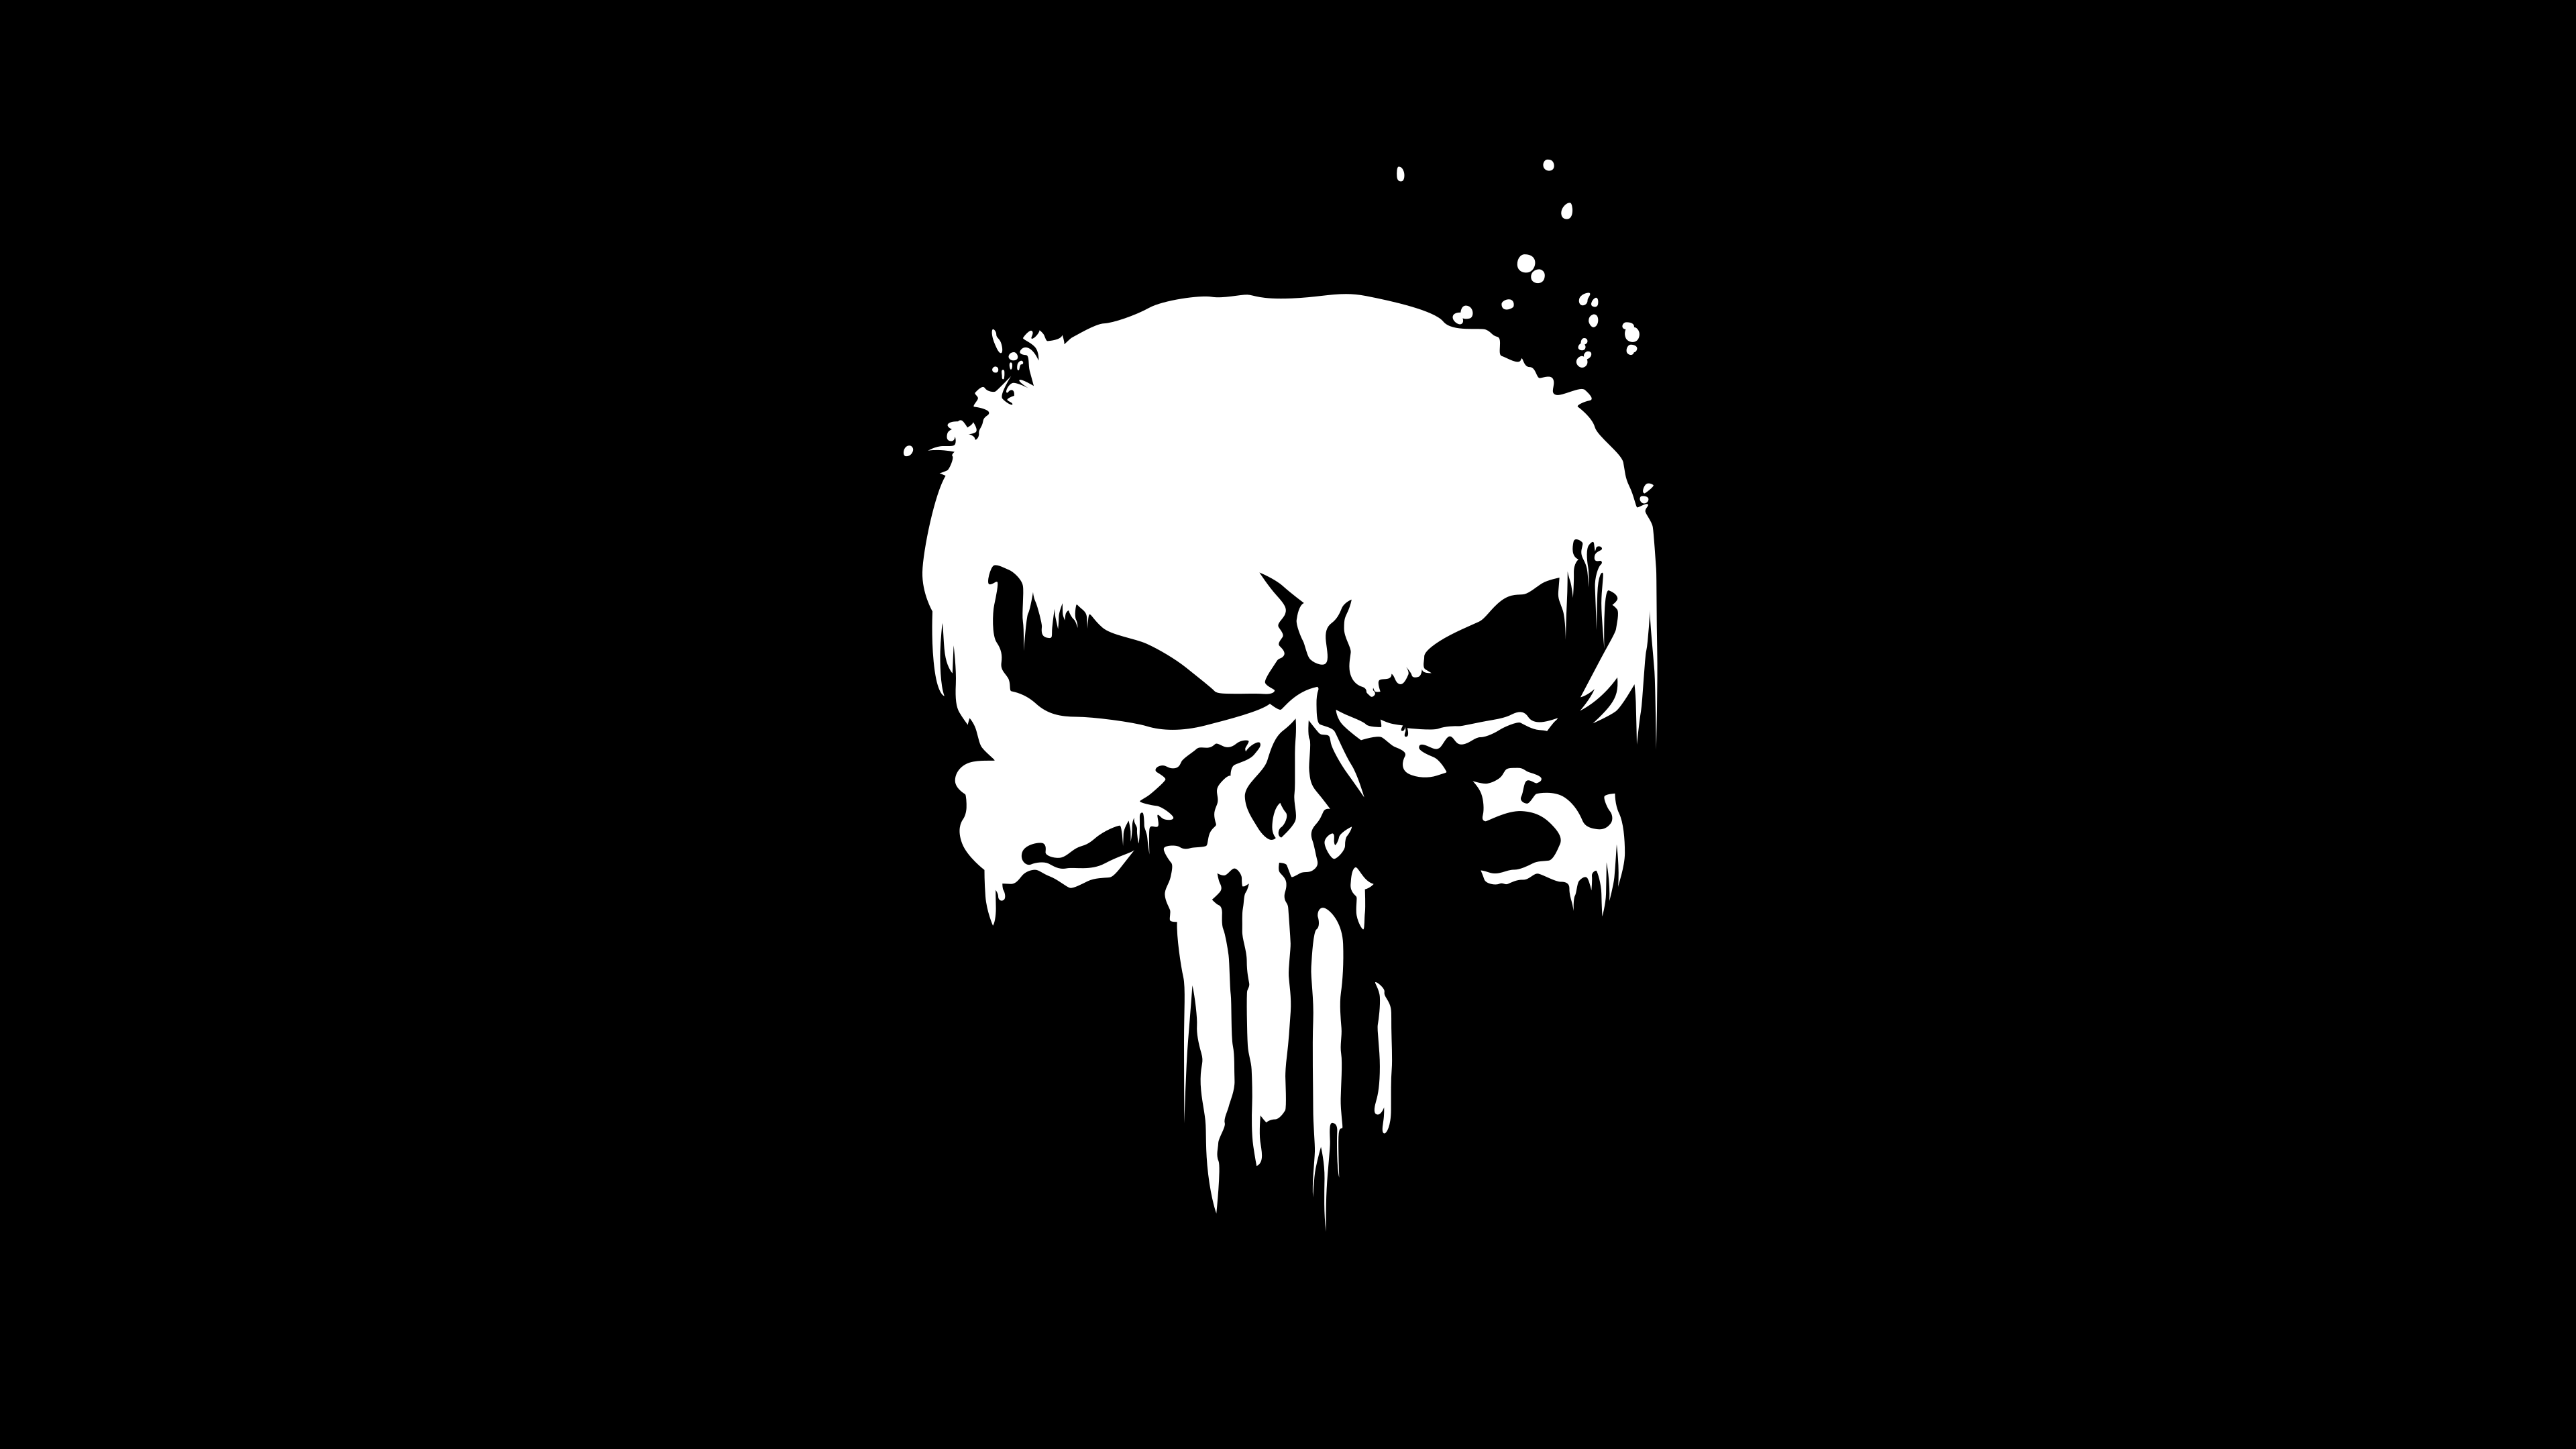 The Punisher Wallpaper 4K, Marvel Comics, Skull, Black background, Black/ Dark